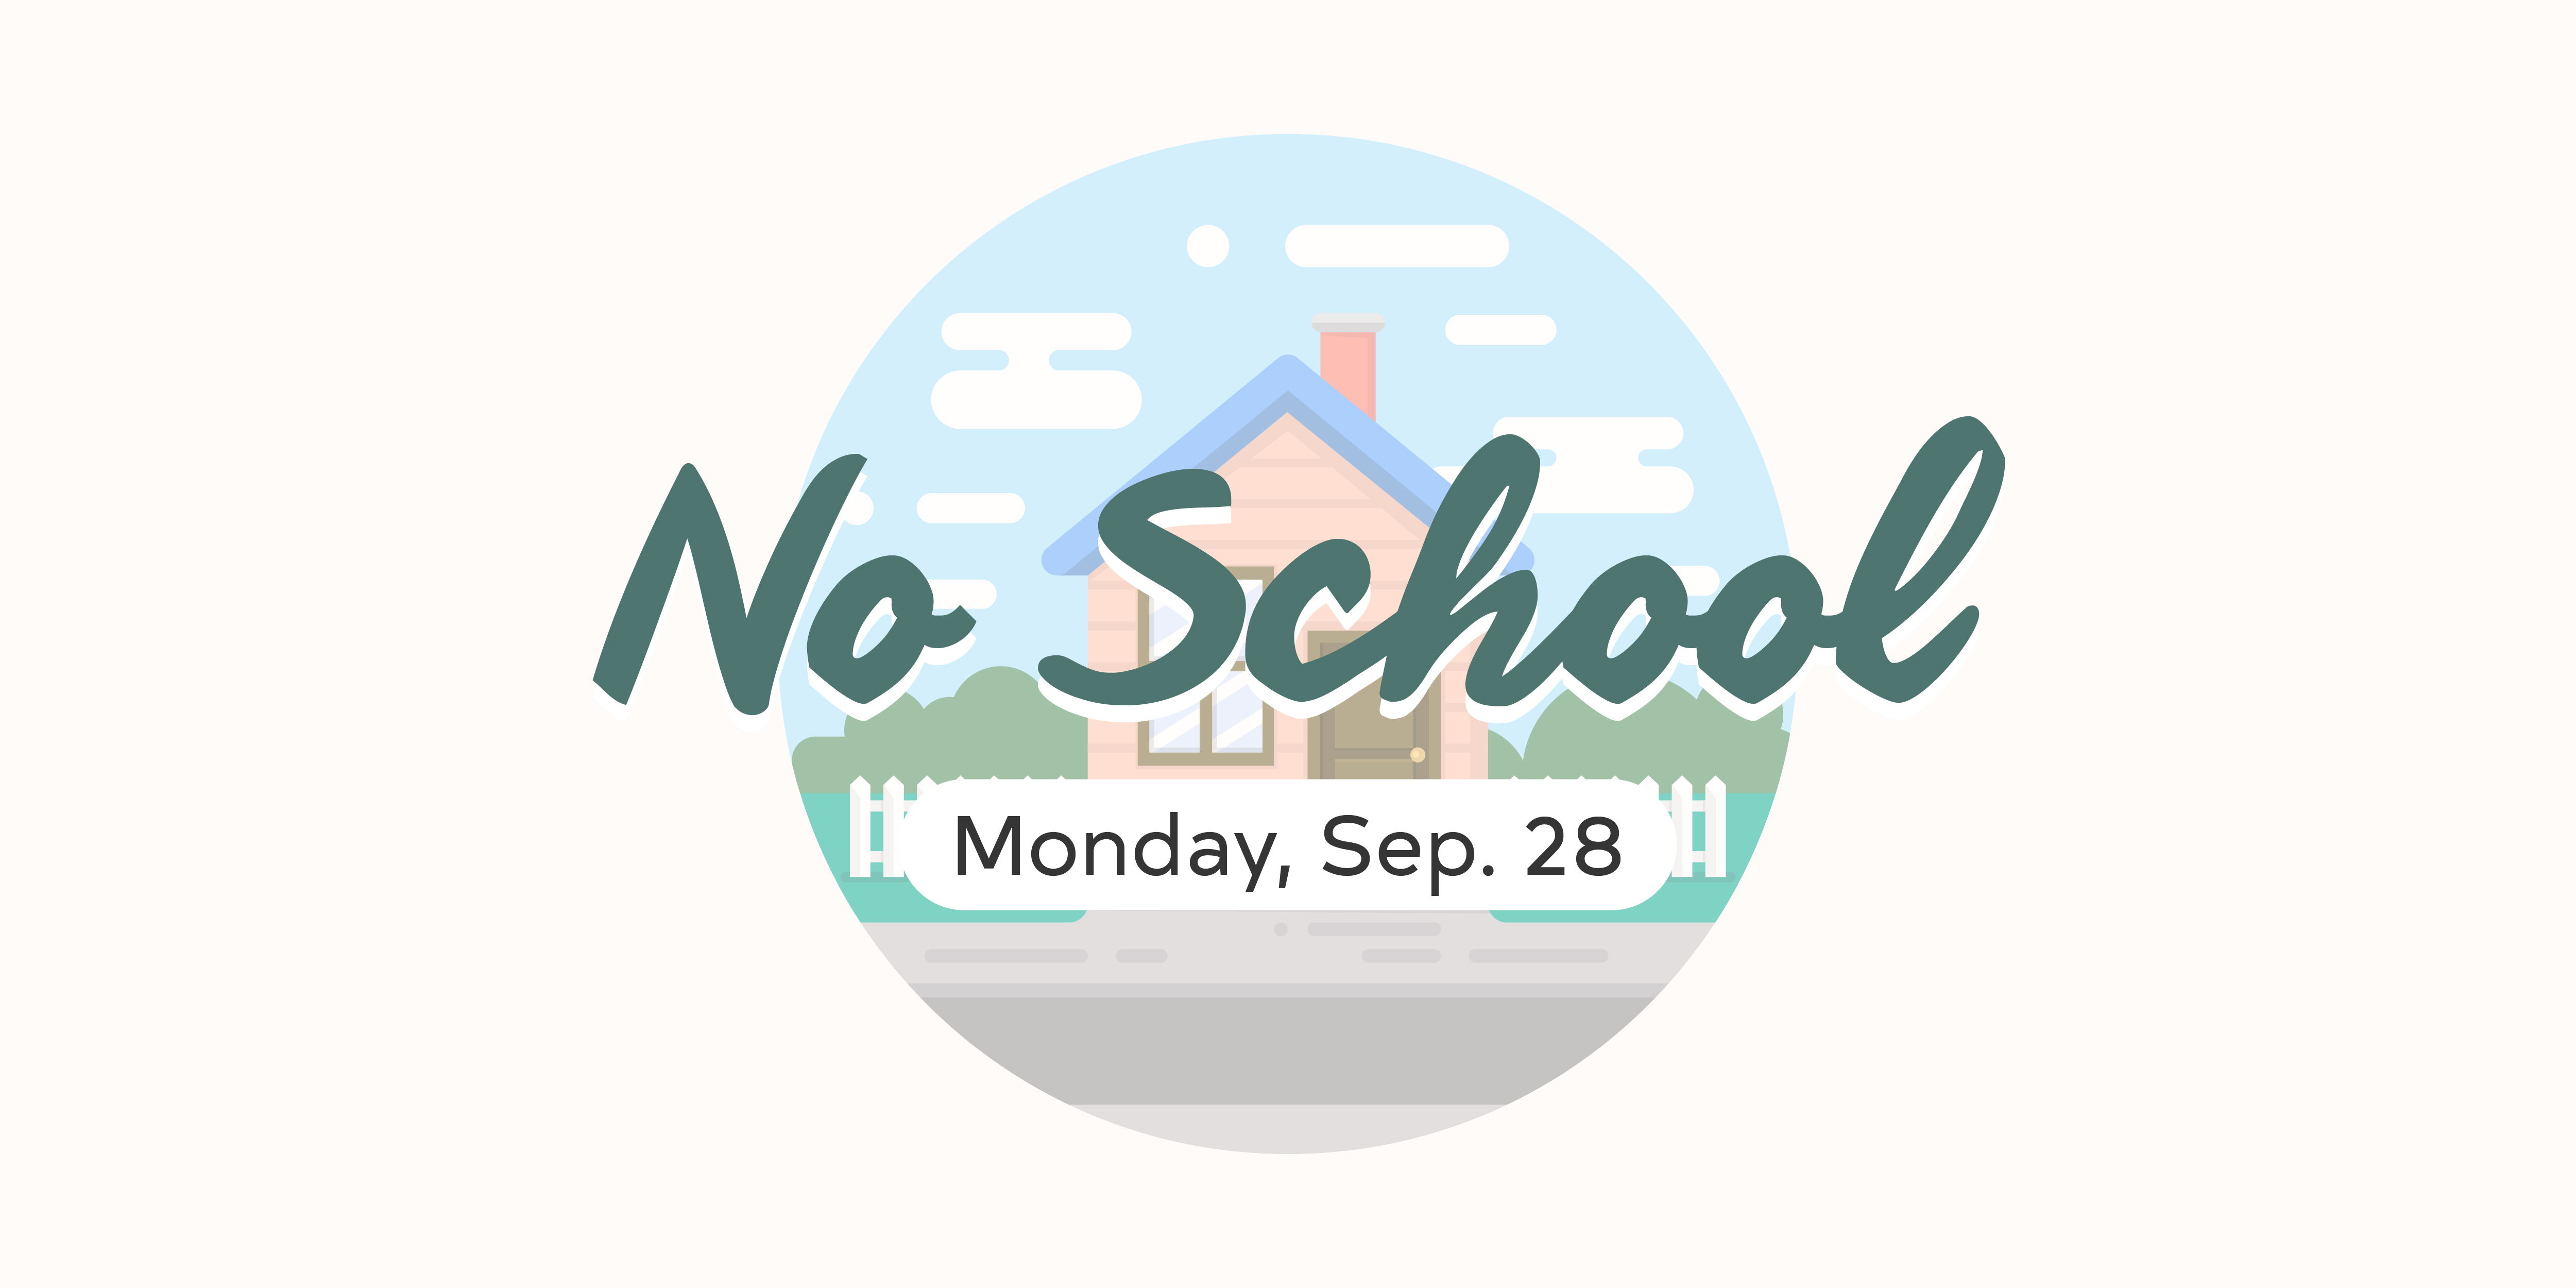 No School - Monday, Sep. 28